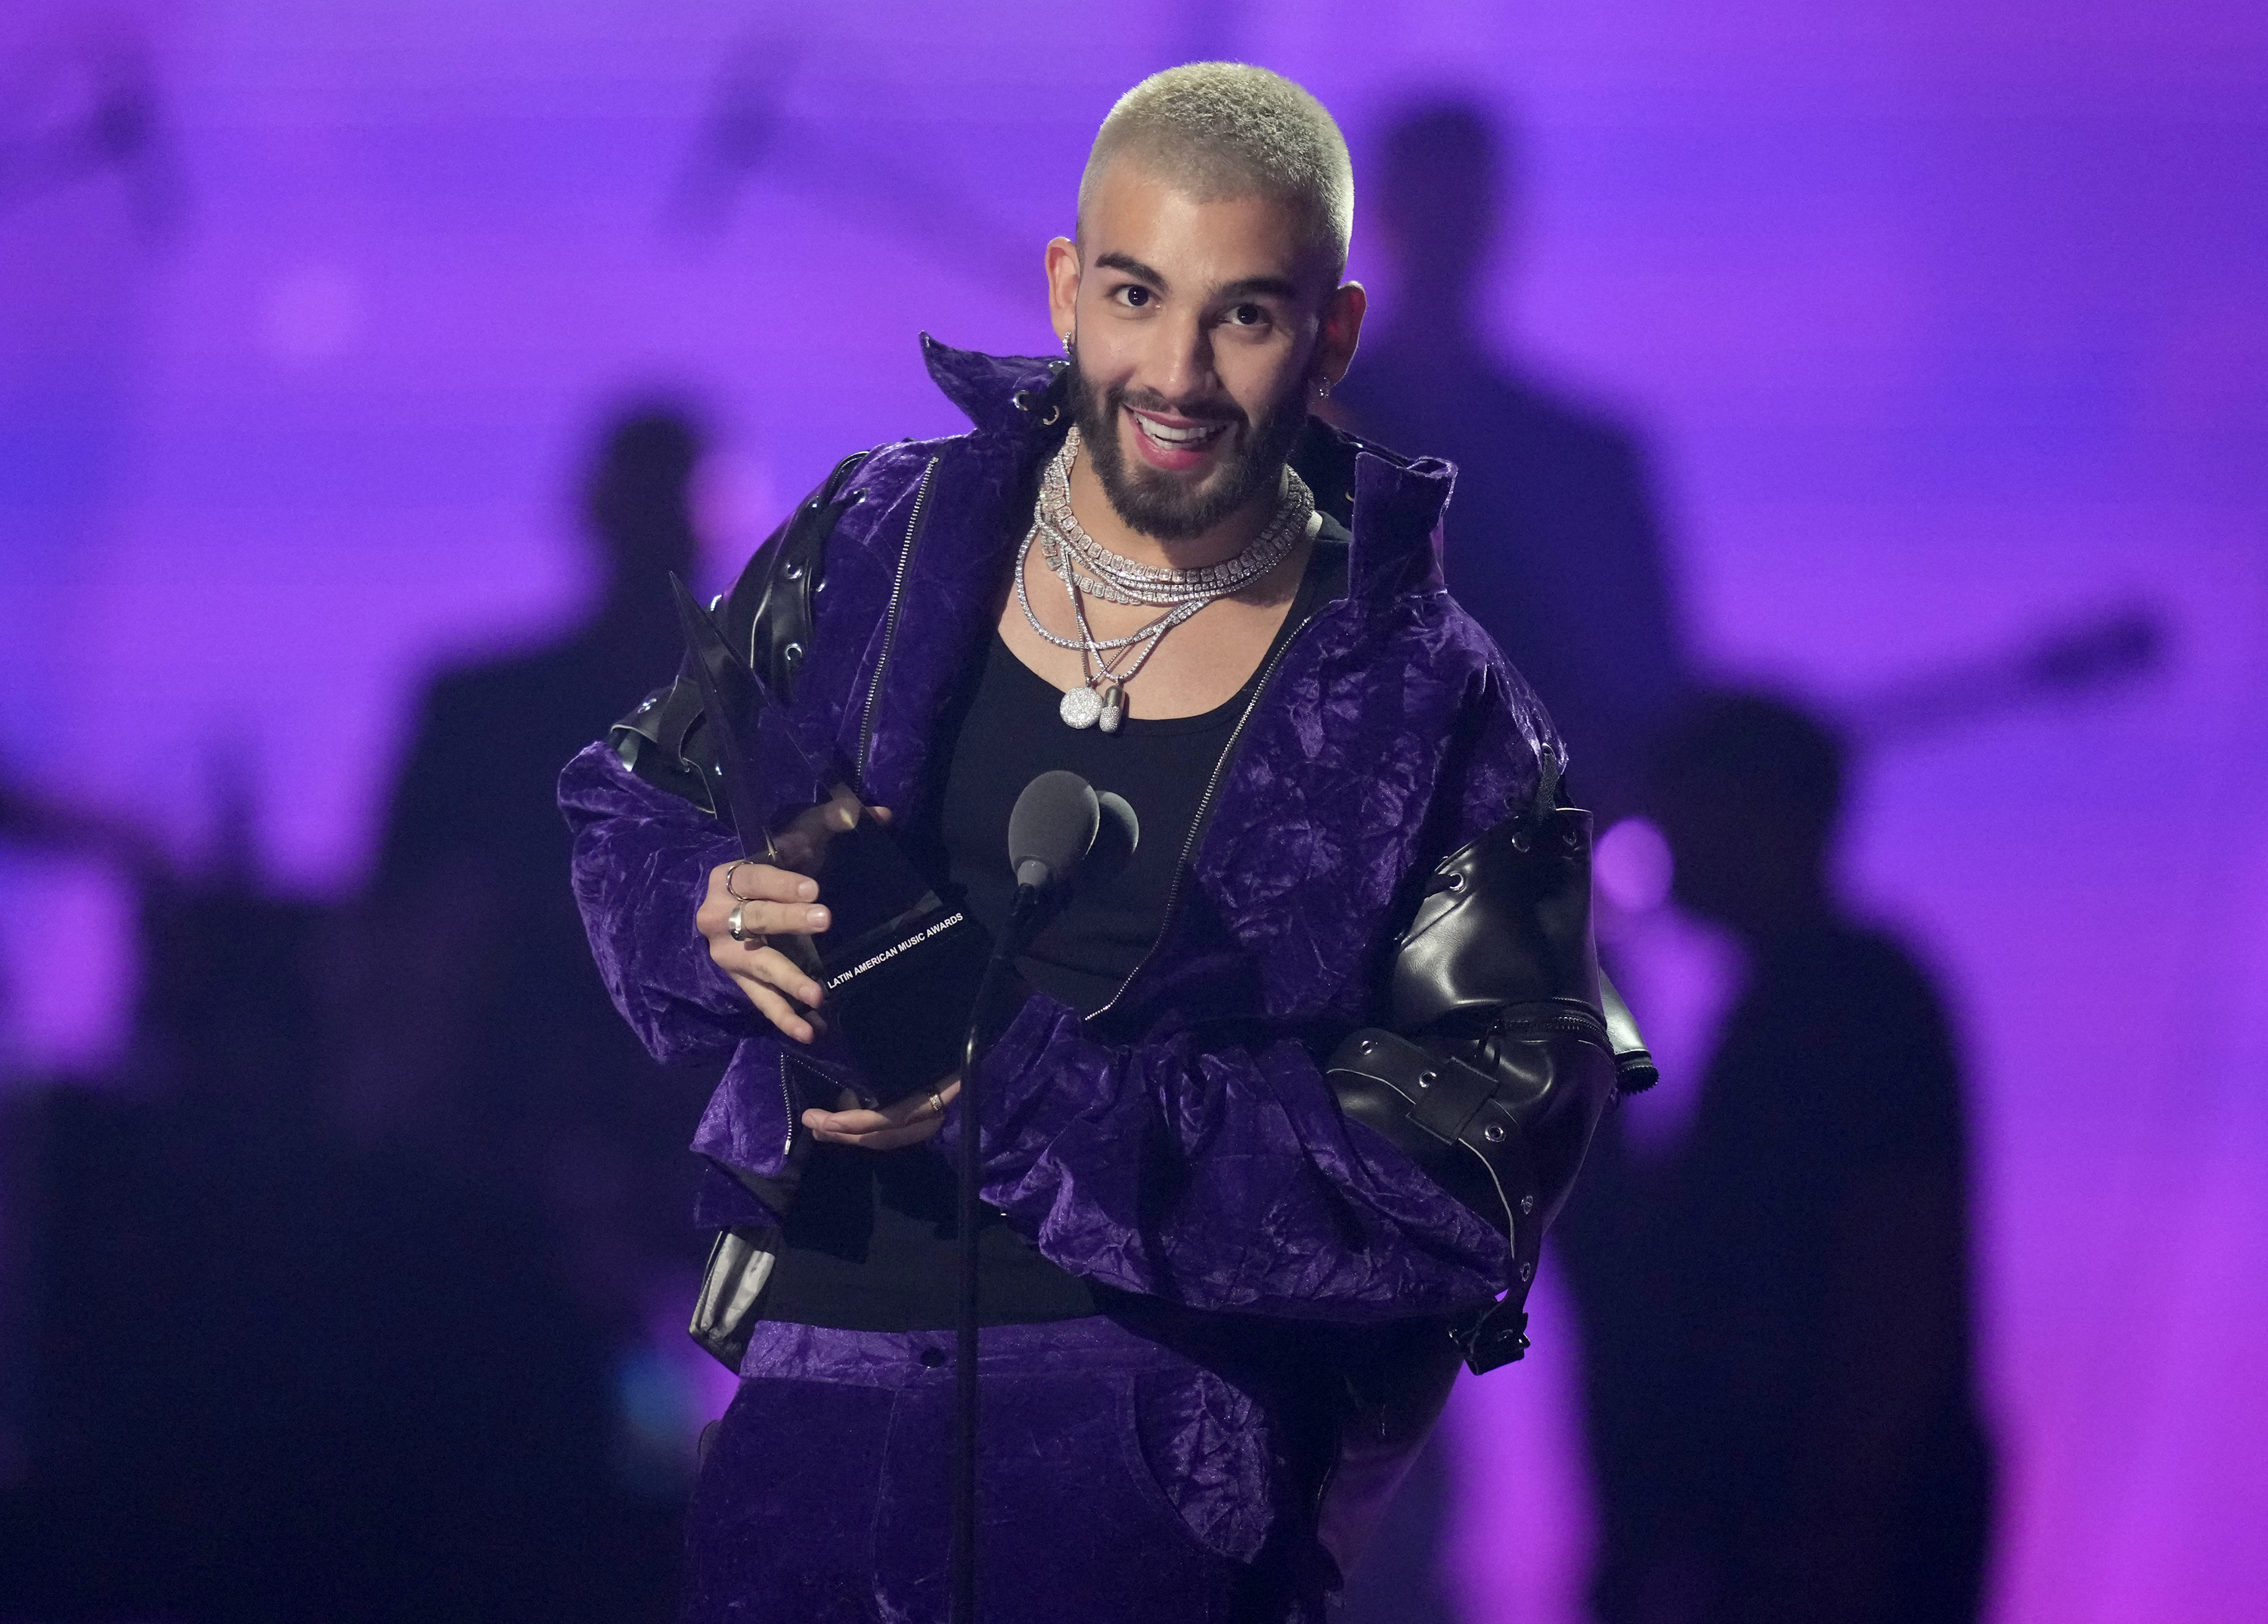 Manuel Turizo recibe el premio a mejor canción tropical por "La bachata" en los Latin American Music Awards el jueves 20 de abril de 2023 en la arena MGM Grand Garden en Las Vegas. (Foto AP/John Locher)